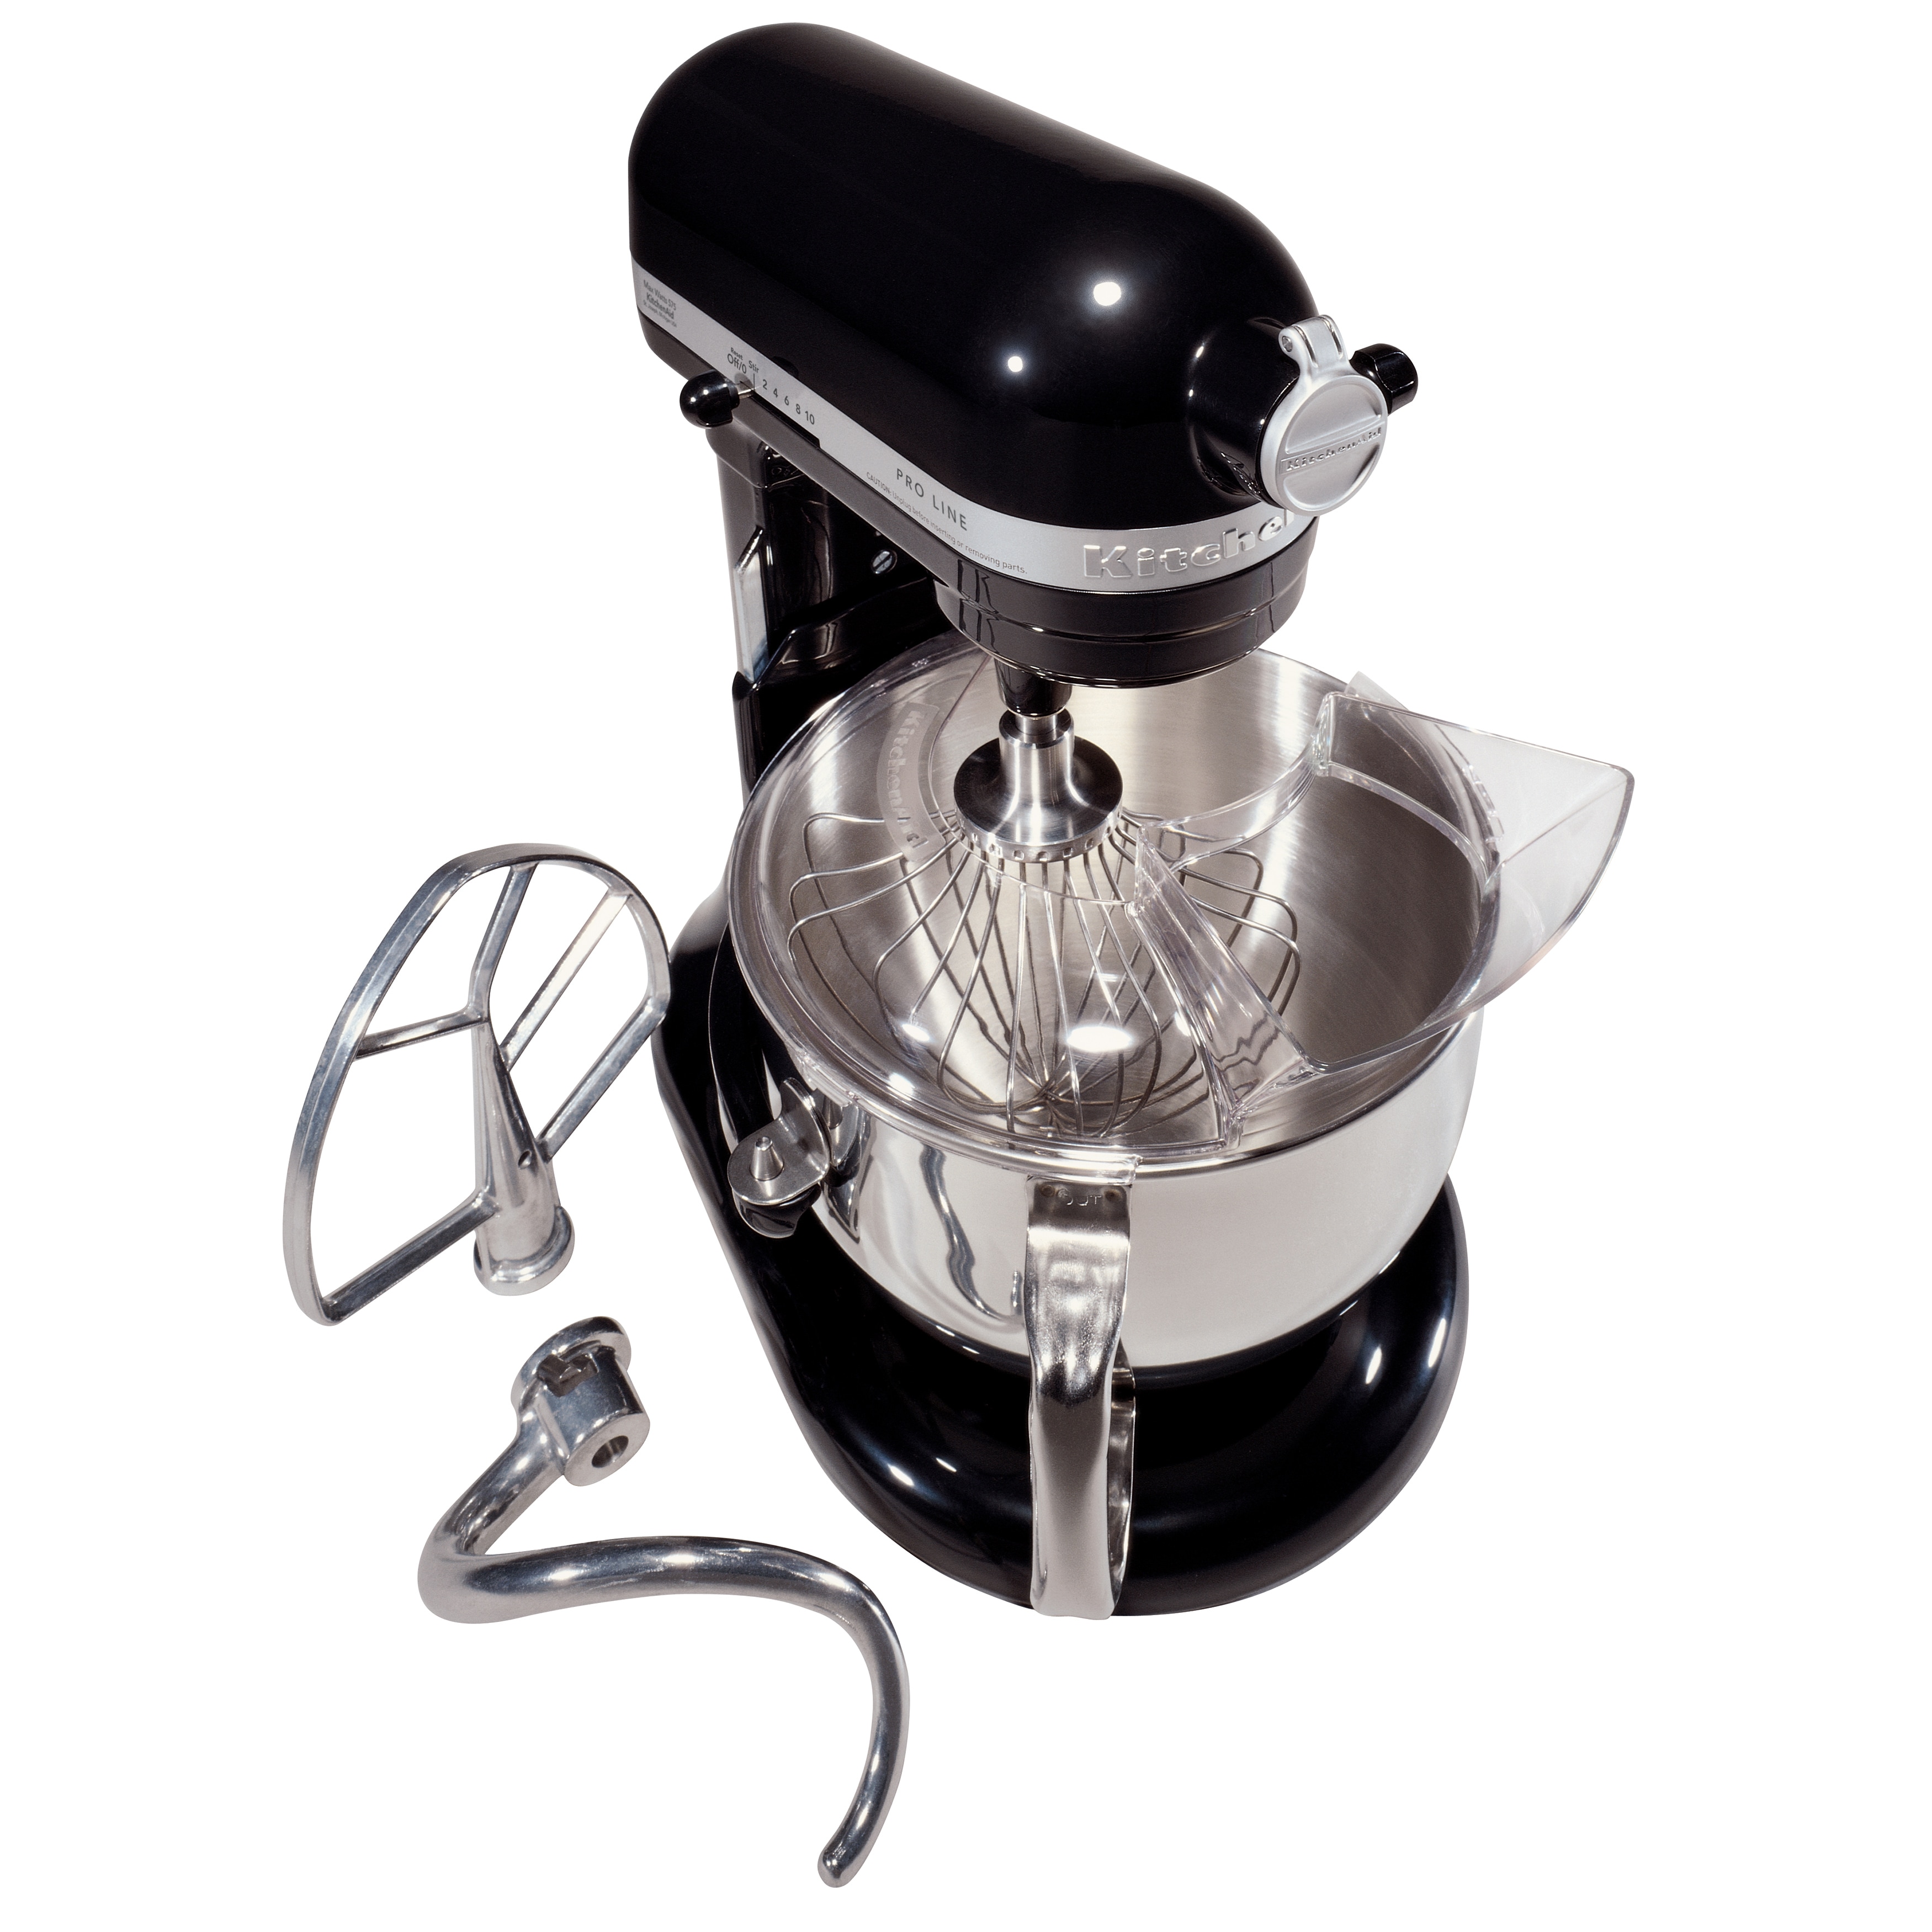 Mixer Sliding Mat, KitchenAid Mat Kitchen Appliance 6.5-8 Quart*1, Black